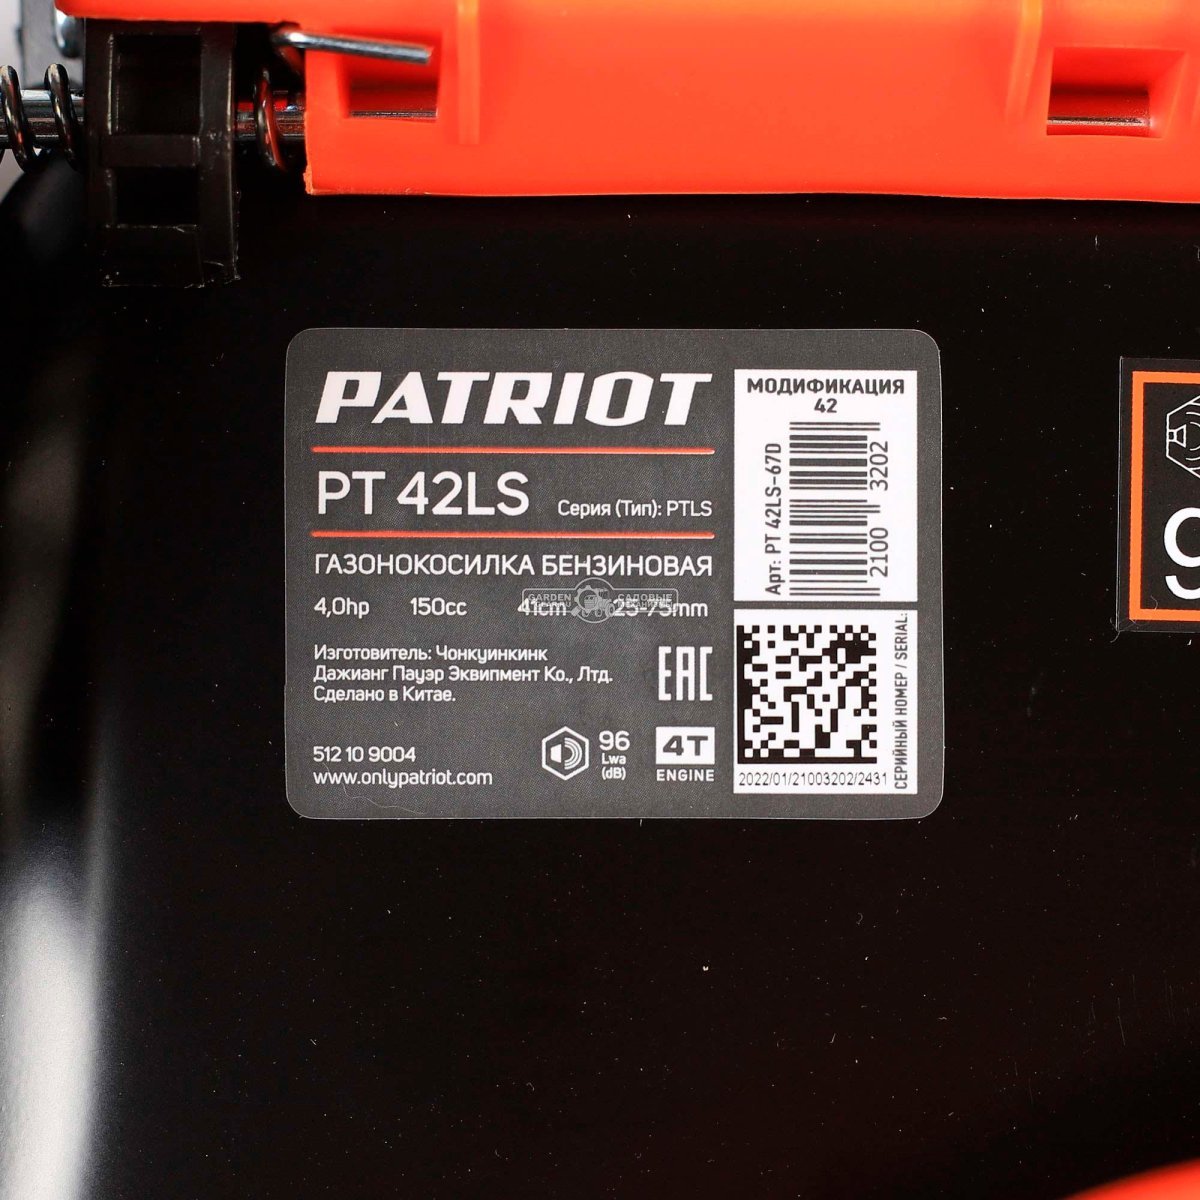 Газонокосилка бензиновая Patriot PT 42 LS (PRC, 150 см3, Patriot, 42 см, сталь, 40 л, мульчирование, 23.6 кг)